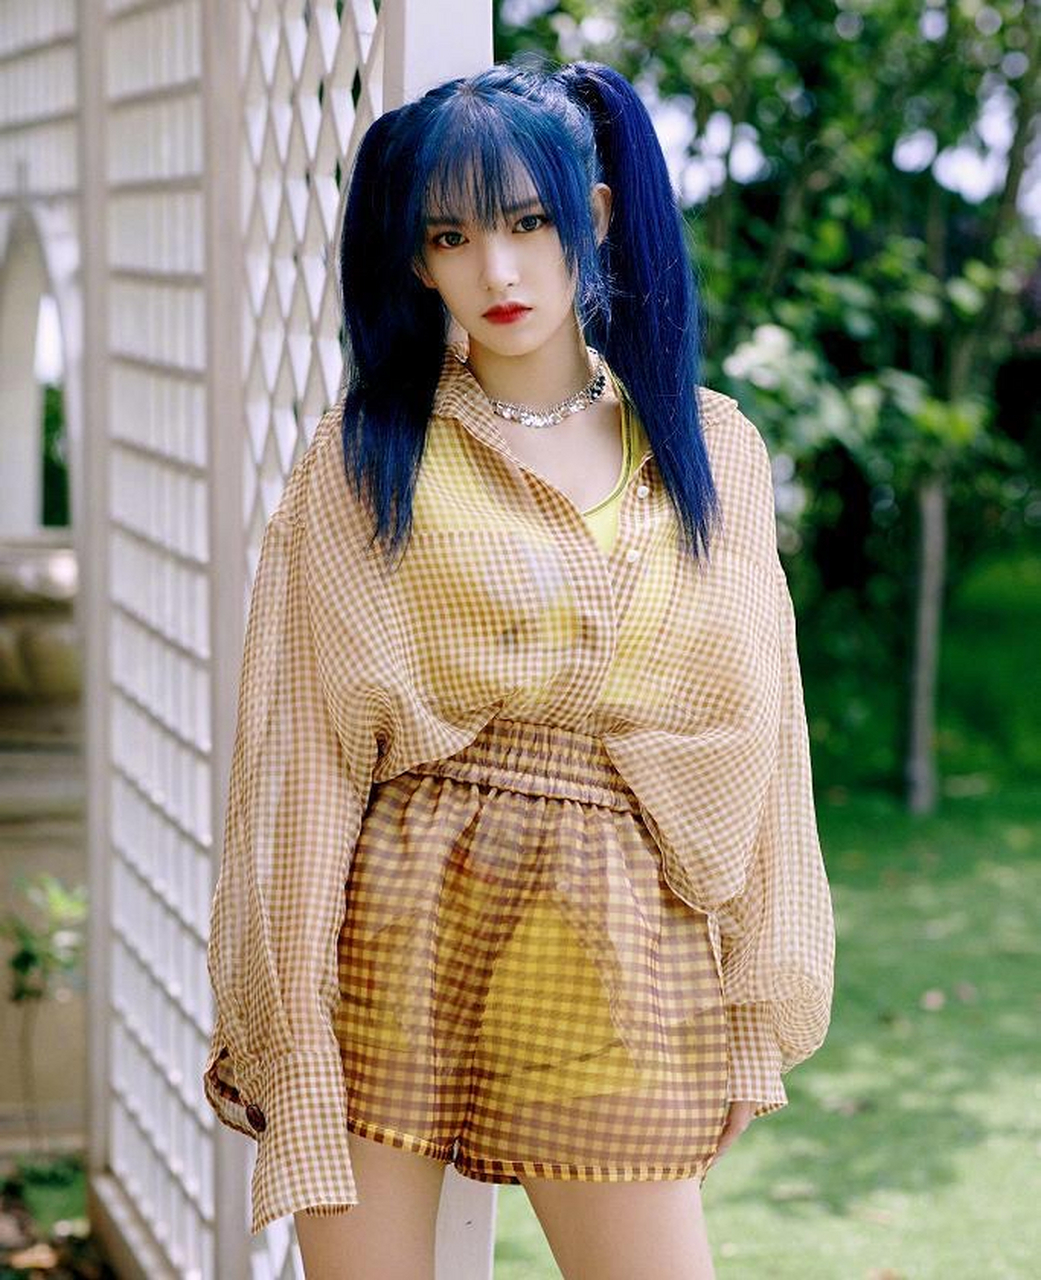 程潇一头迷雾蓝色炫酷头发和她的穿搭造型,成功了引起了大家的注意